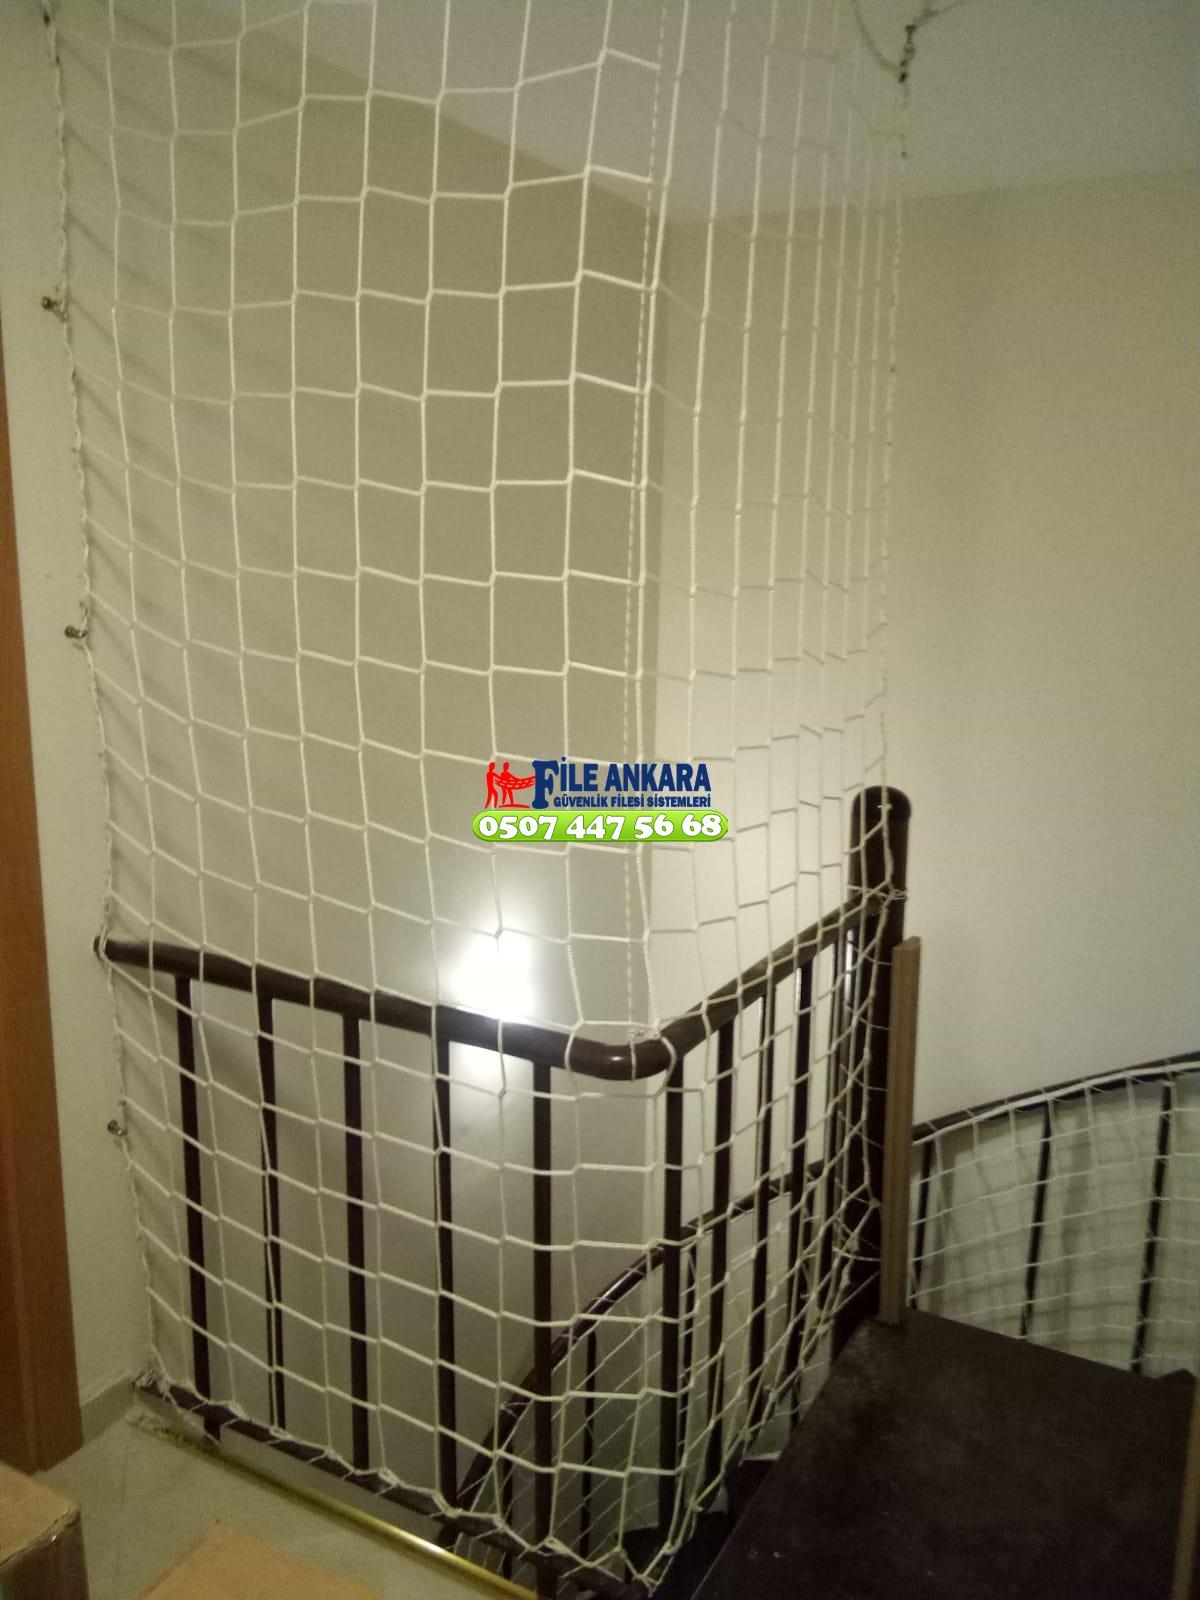  Keçiören Balkon  koruma filesi - Merdiven filesi - En ucuz balkon güvenlik filesi satış ve montajı 0507 447 56 68